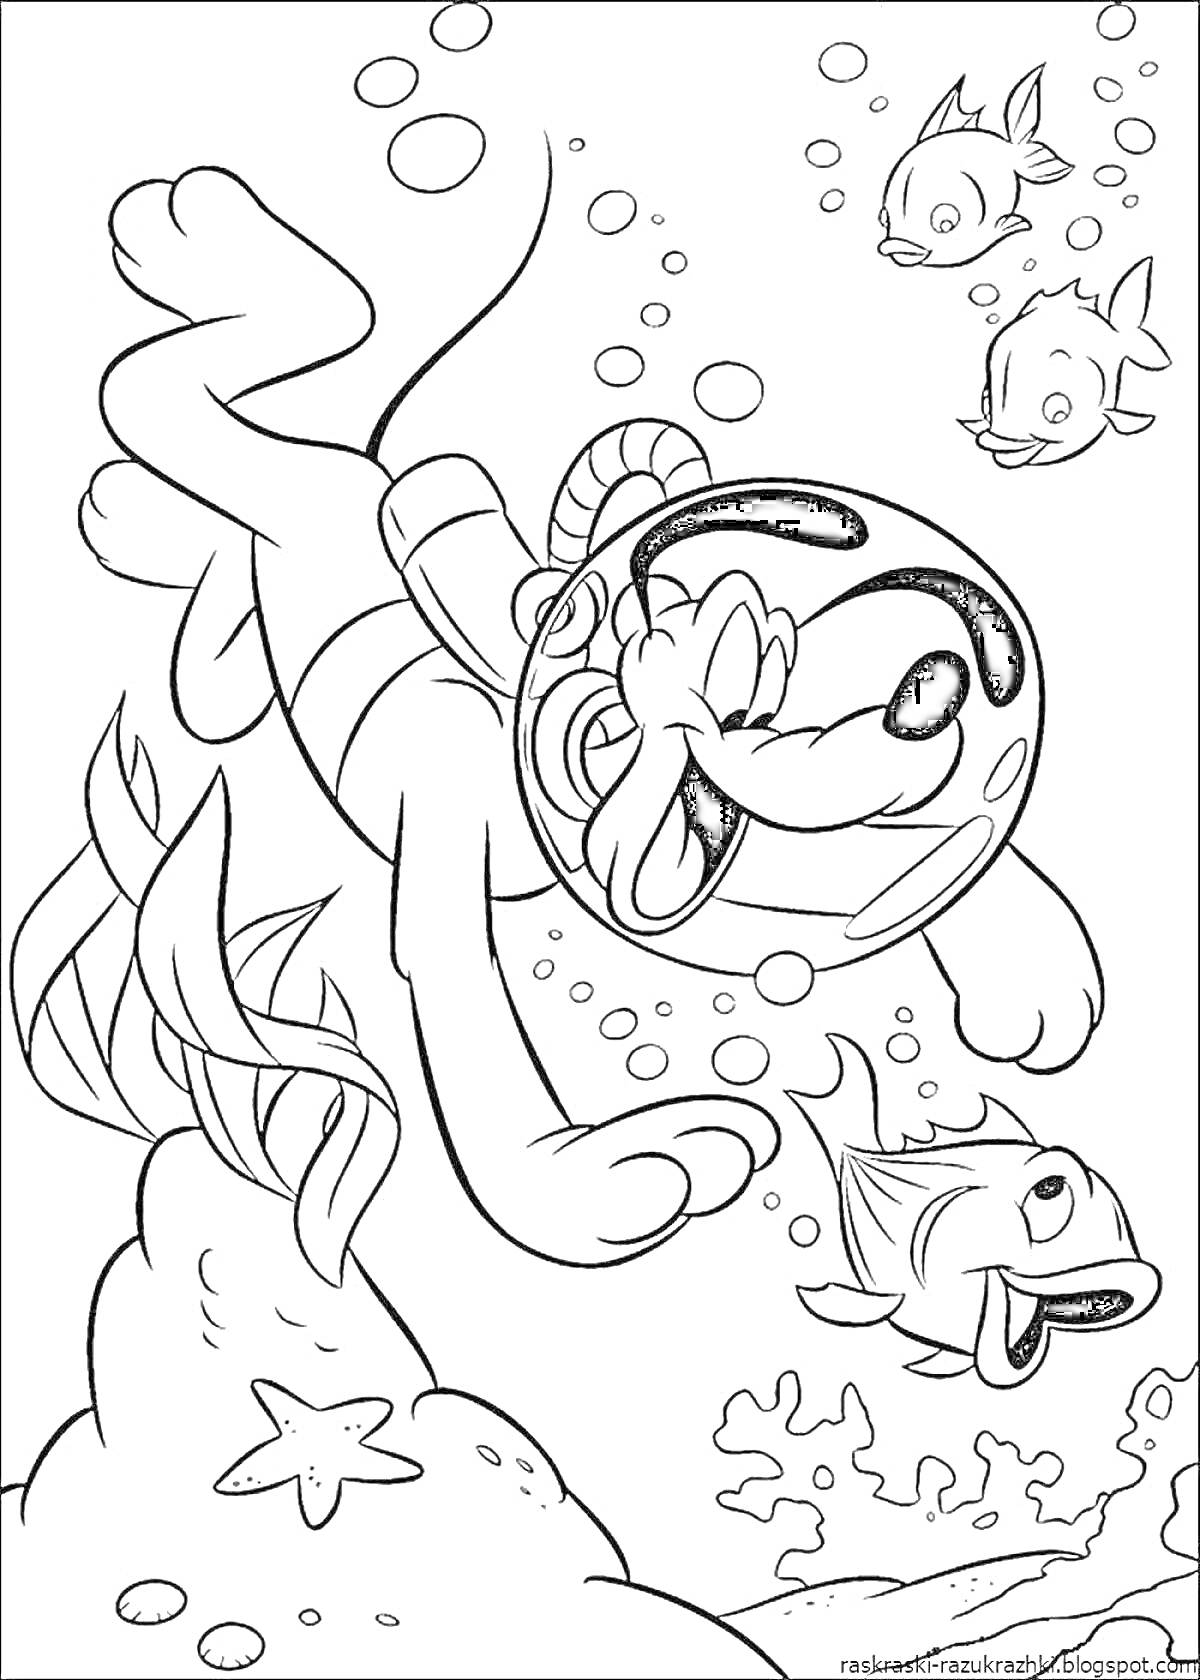 Раскраска Собака с шлемом, ныряющая в воду среди рыб, пузырей и кораллов